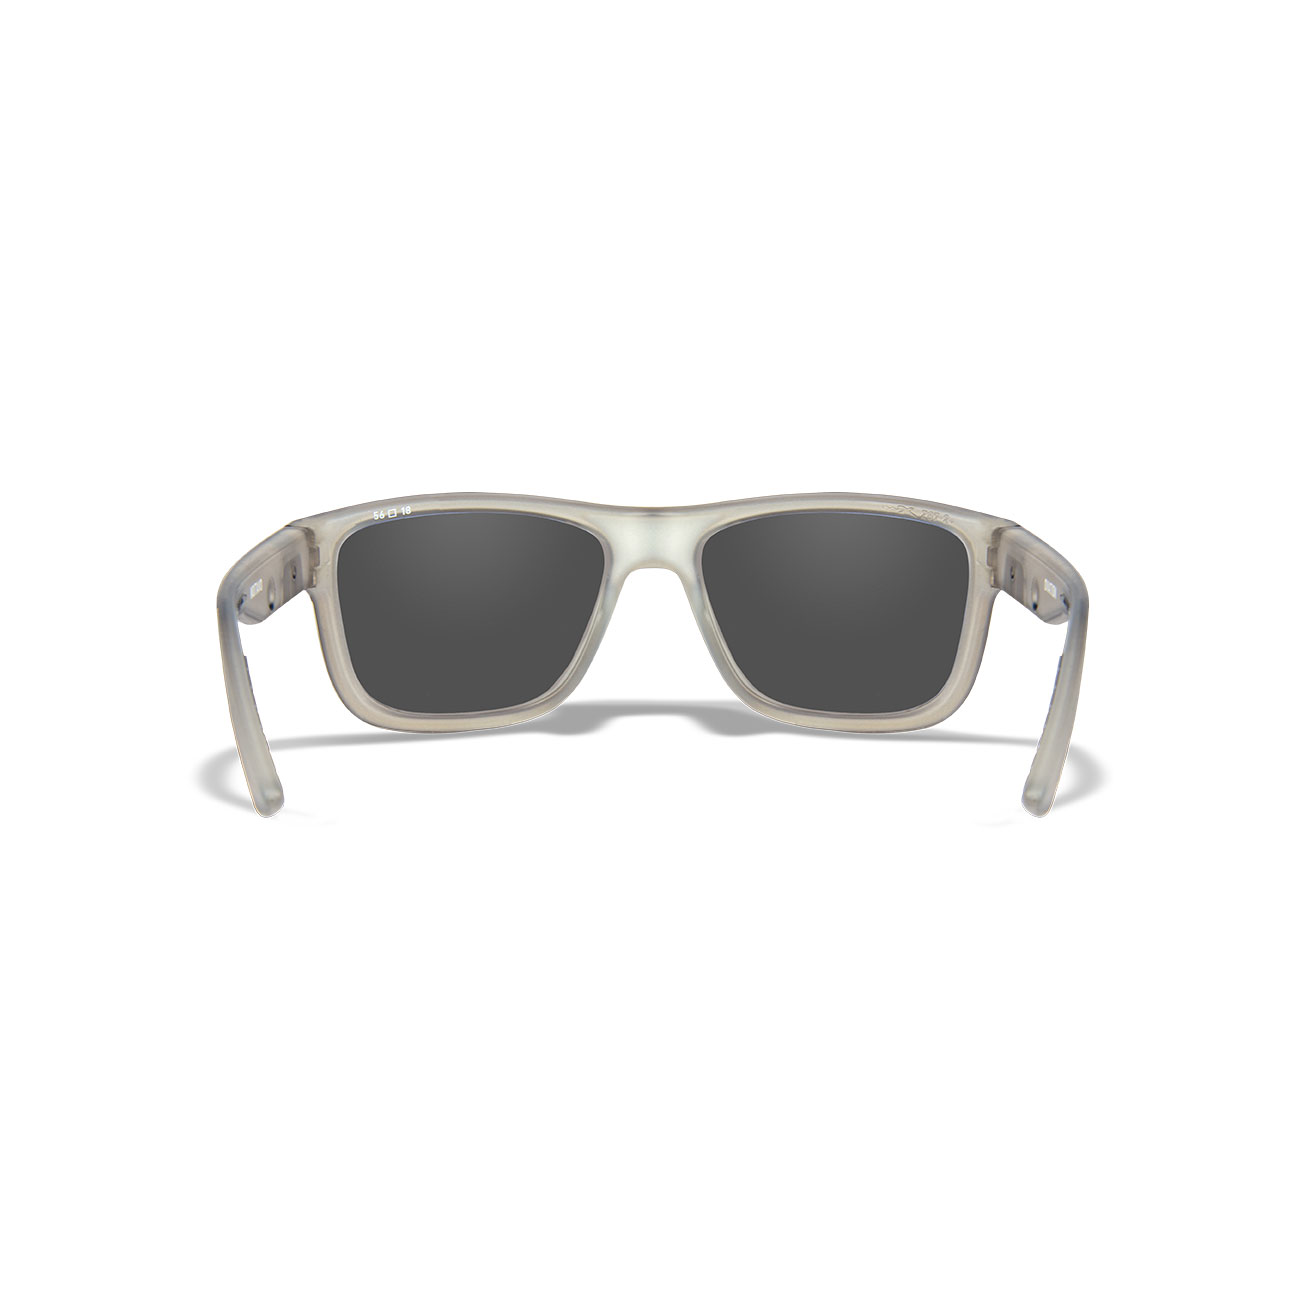 Wiley X Sonnenbrille Ovation Captivate matt transparent grau Glser blau verspiegelt polarisiert inkl. Brillenetui und Seitensch Bild 3